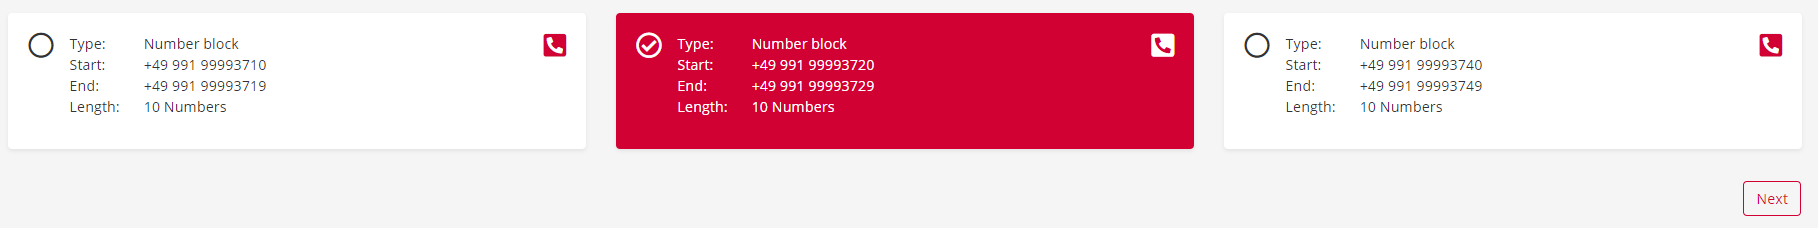 pascom cloud phone number block (DIDs)